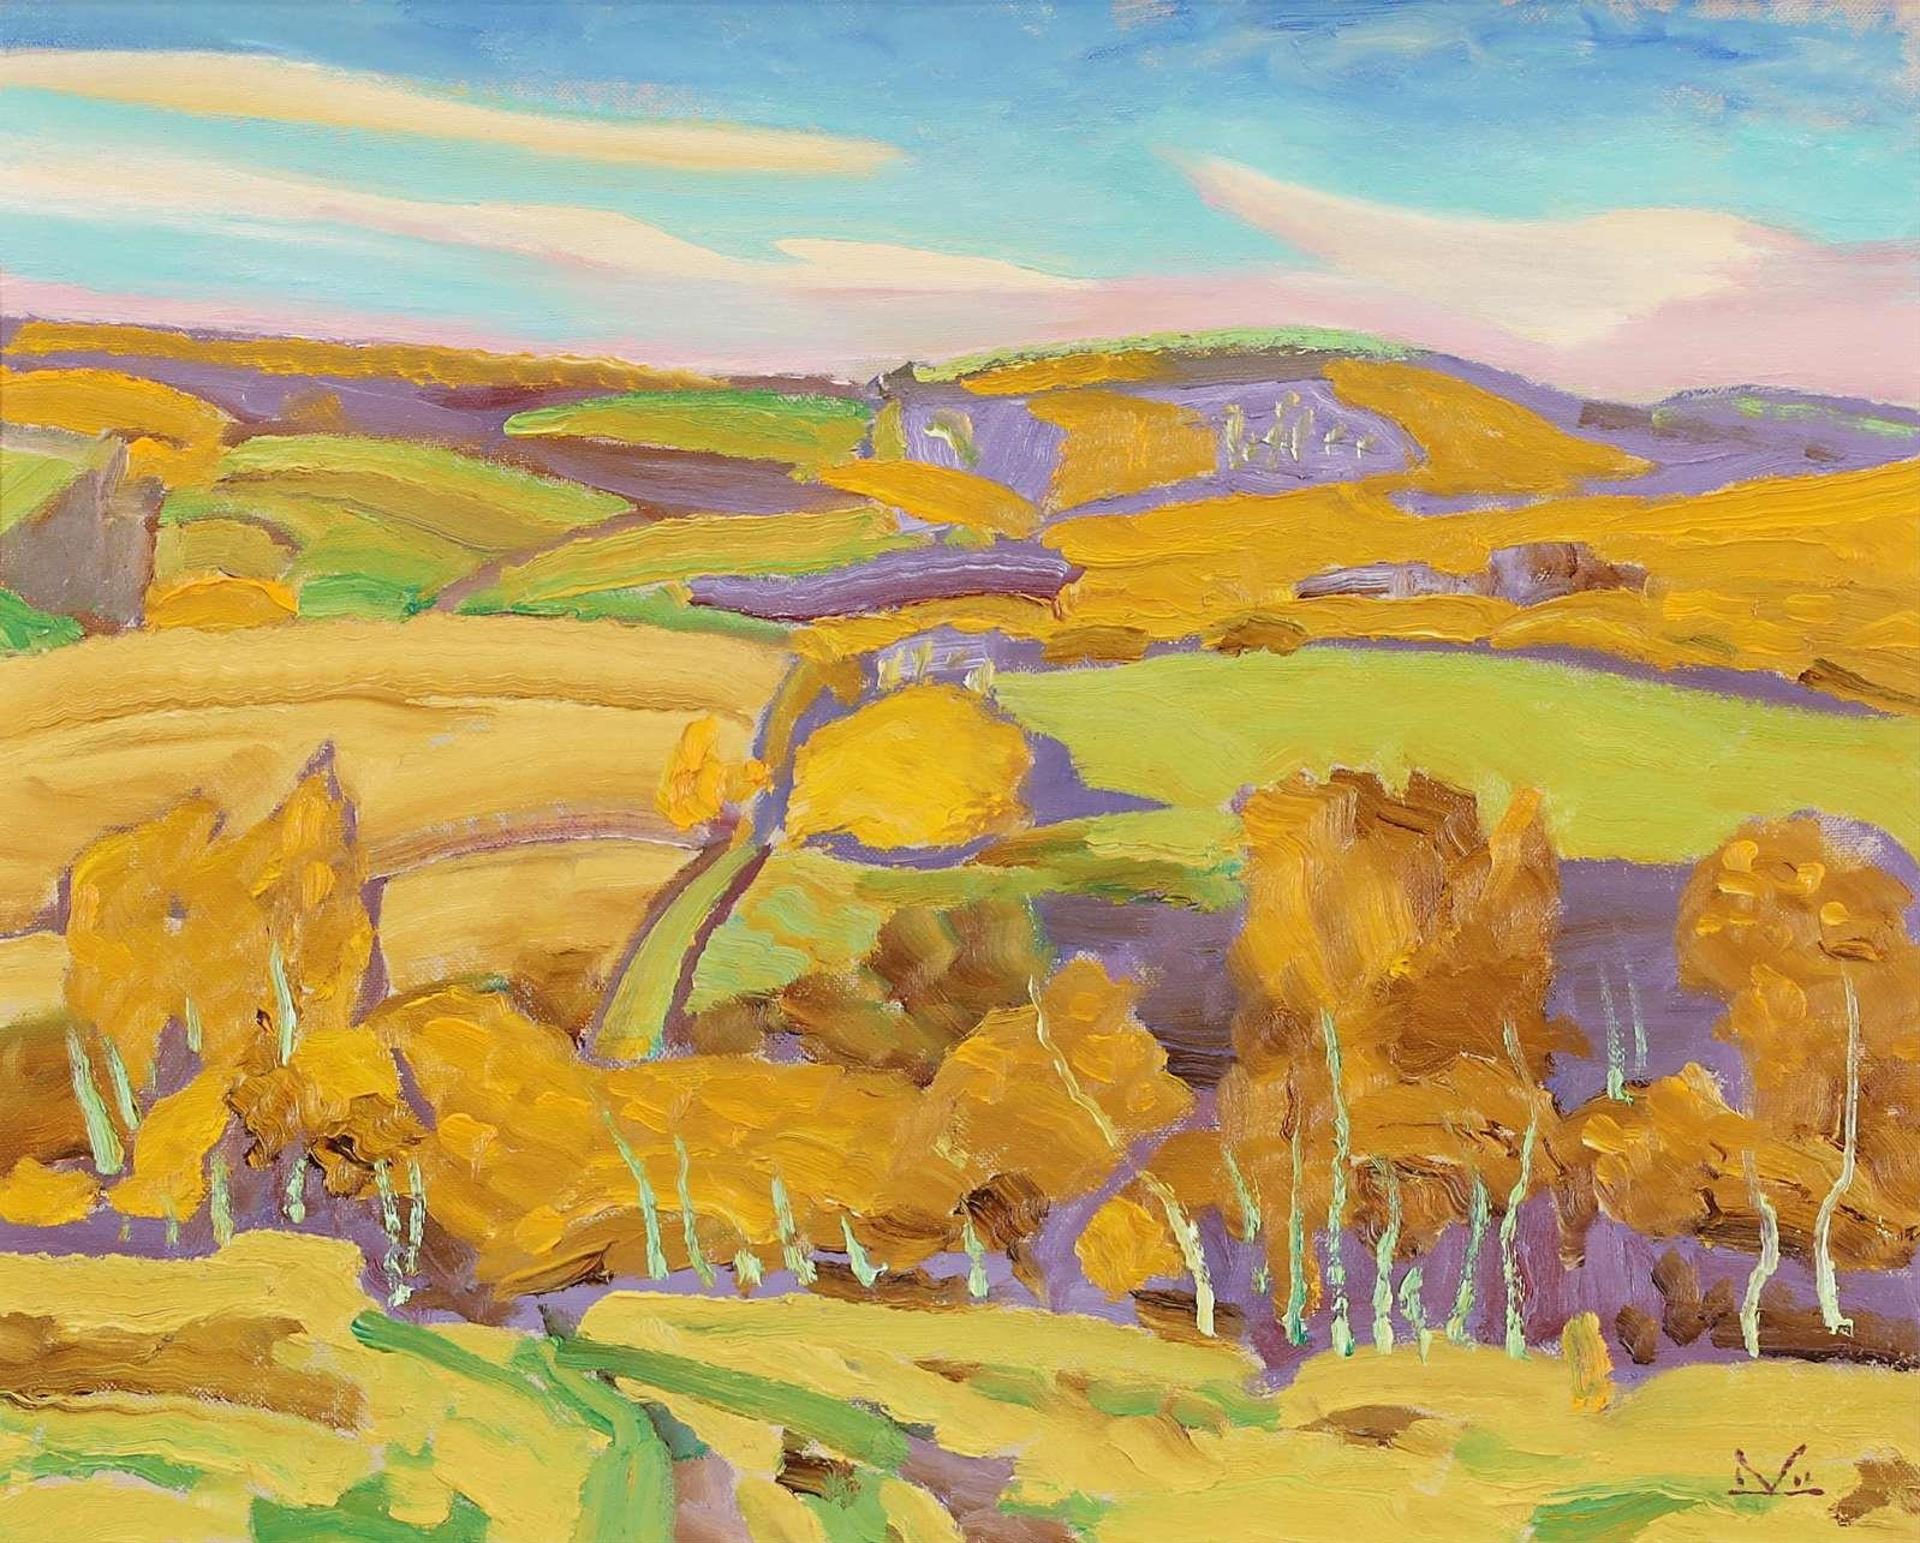 Illingworth Holey (Buck) Kerr (1905-1989) - Foothills, September; 1988